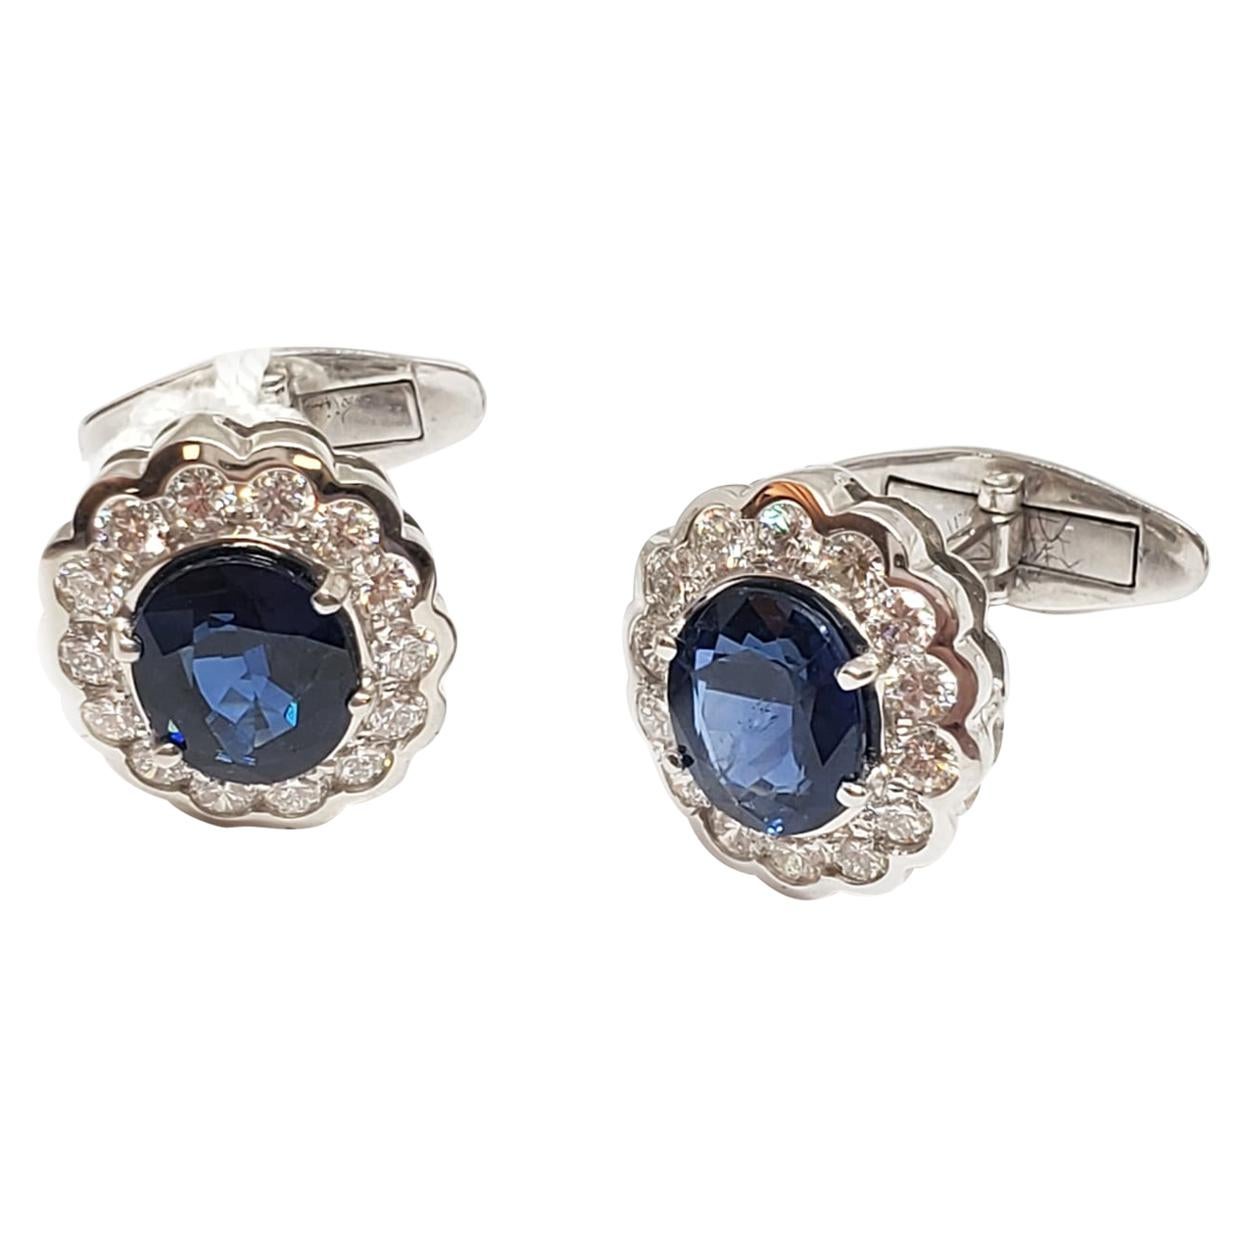 Manschettenknöpfe mit Diamanten und blauen Saphiren von Andreoli